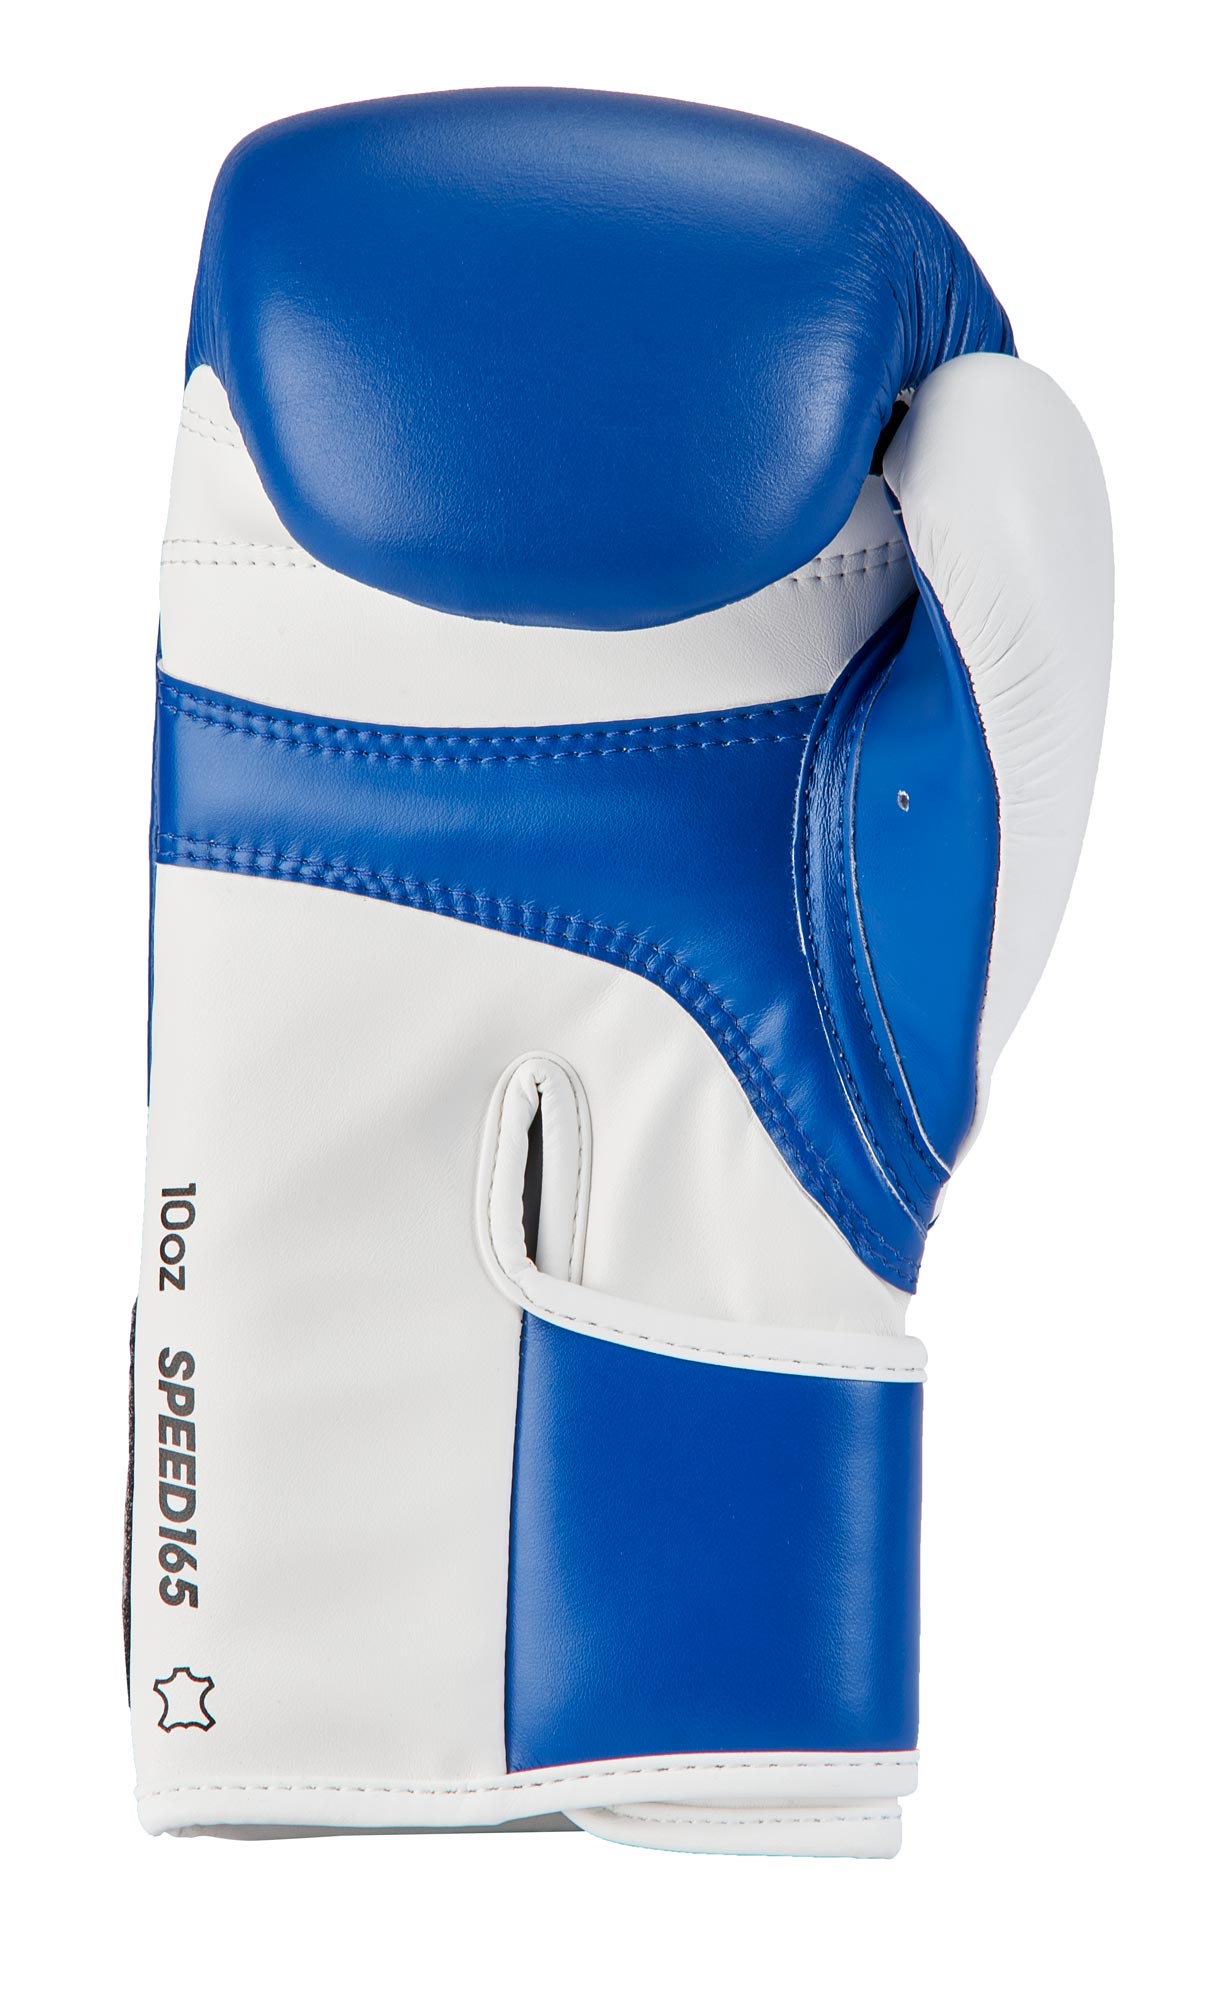 adidas Wettkampfhandschuh Speed 165 blue/white, adiSBG165